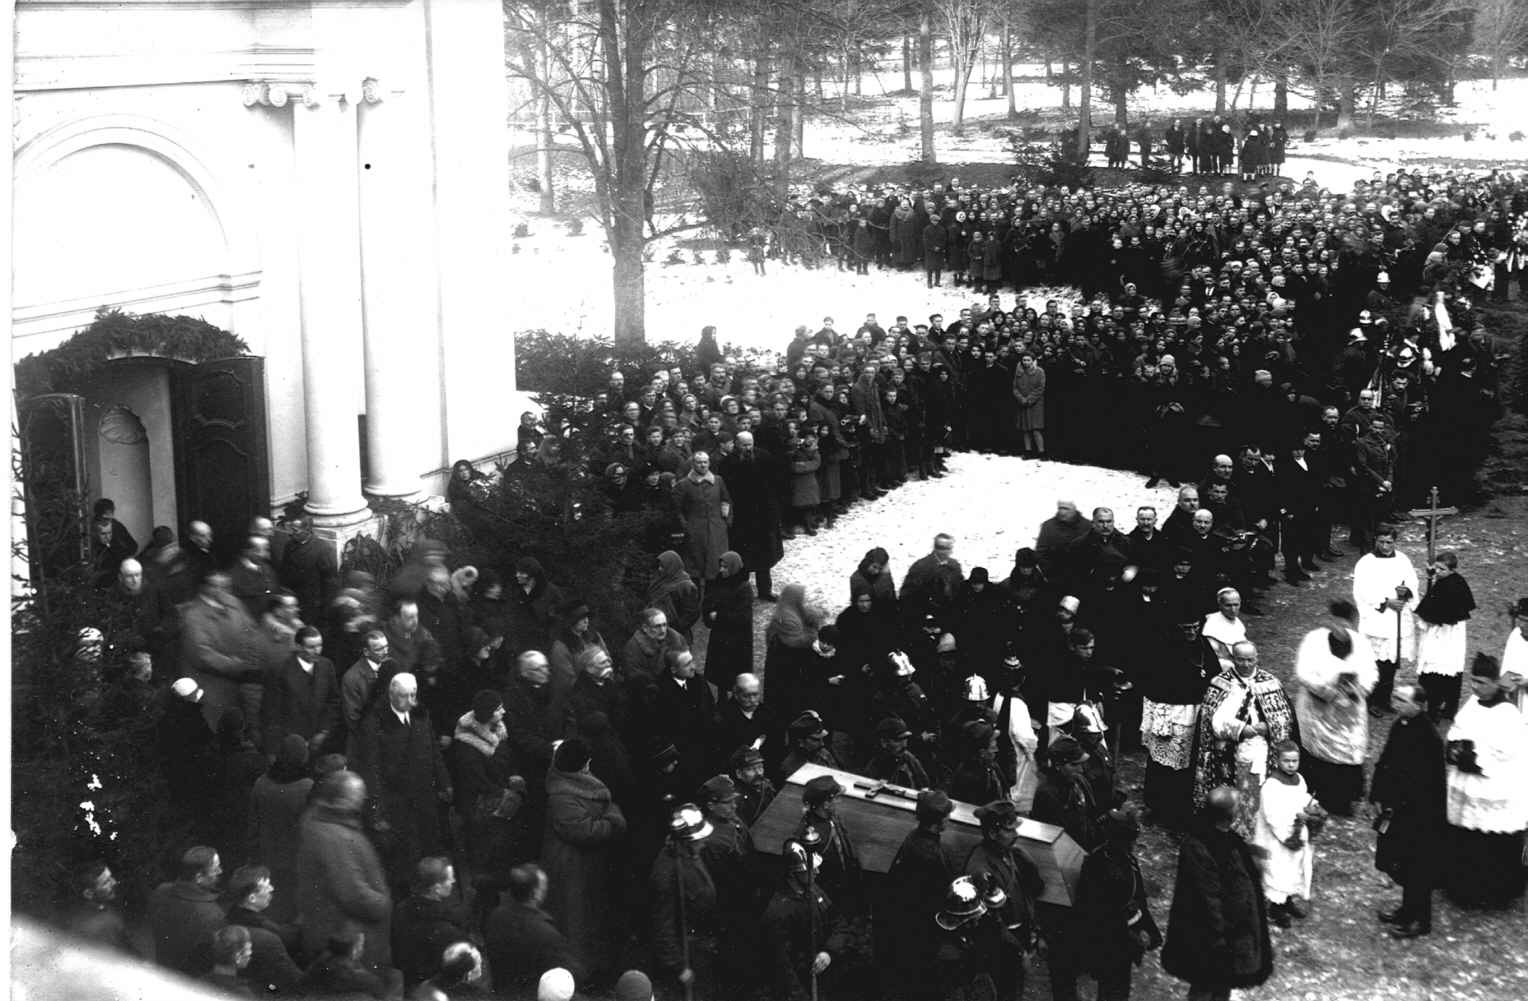 Fotografia archiwalna, czarno-biała, wykonana 12 stycznia 1930 roku, przedstawia moment wyjścia z kaplicy pałacowej w Kozłówce procesji pogrzebowej z trumną z ciałem zmarłej Marii Zamoyskiej.